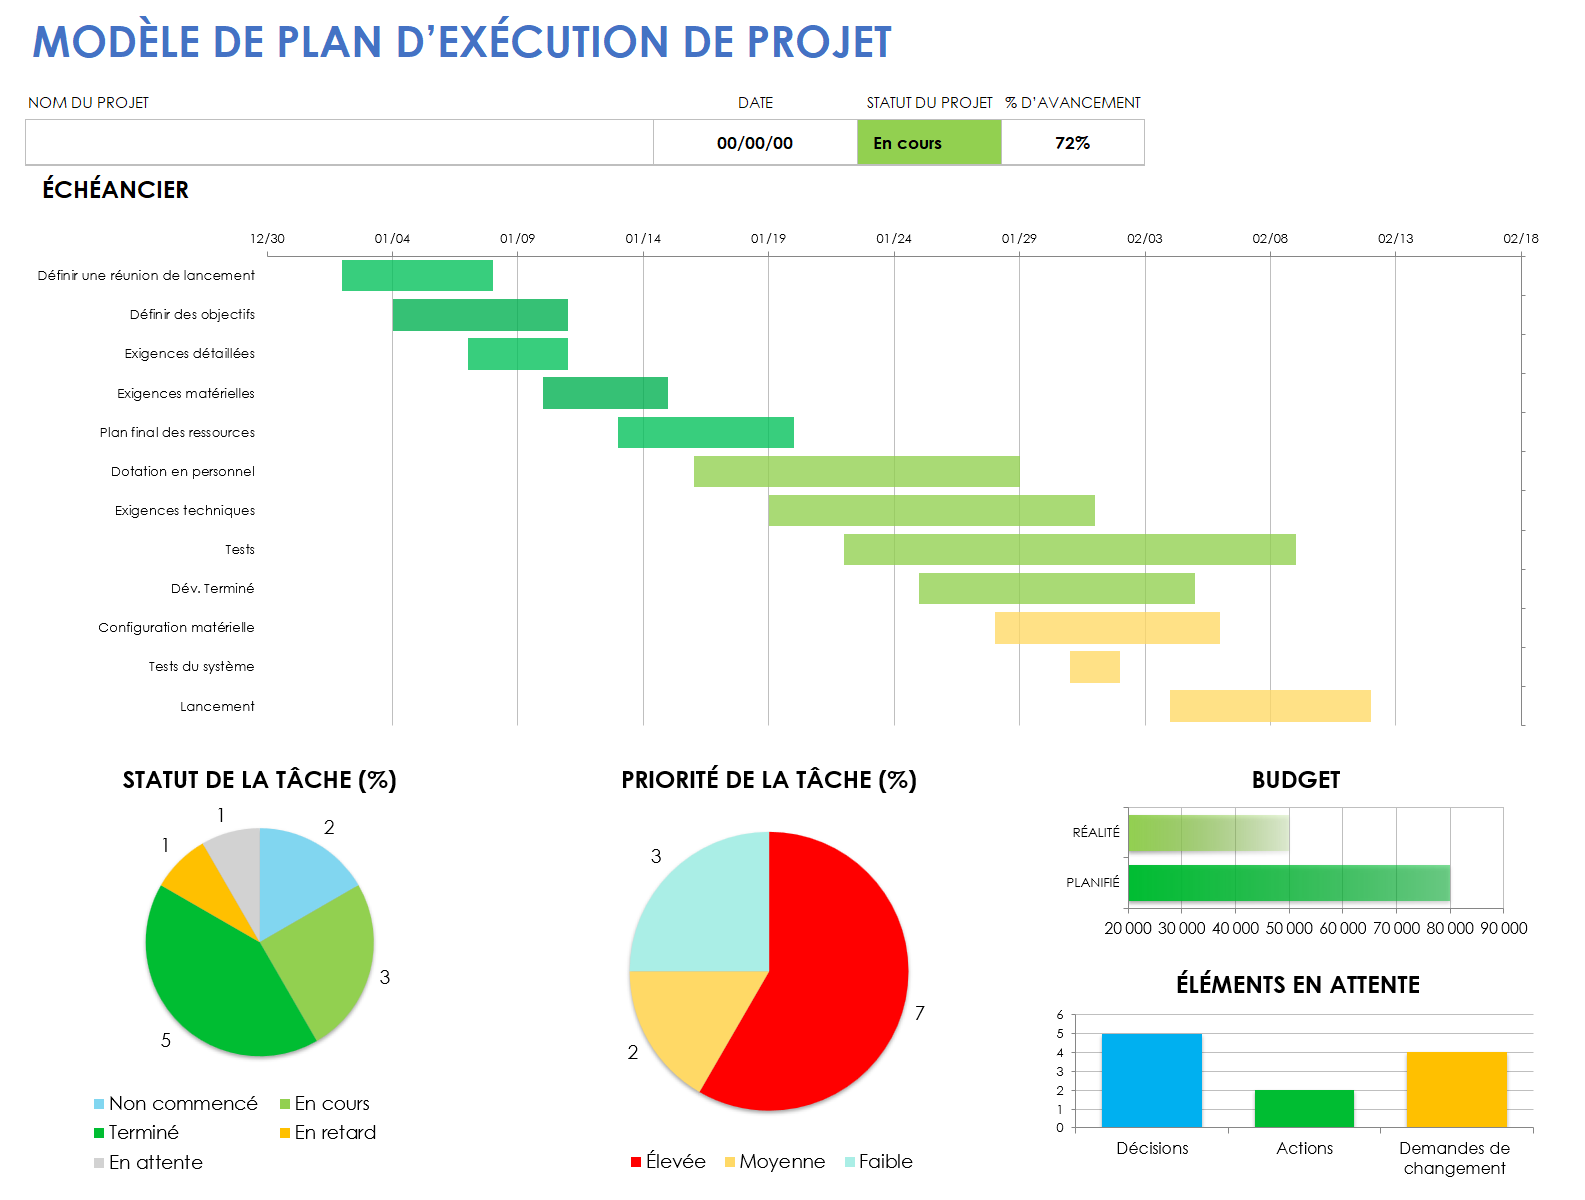  modèle de plan d'exécution de projet préliminaire